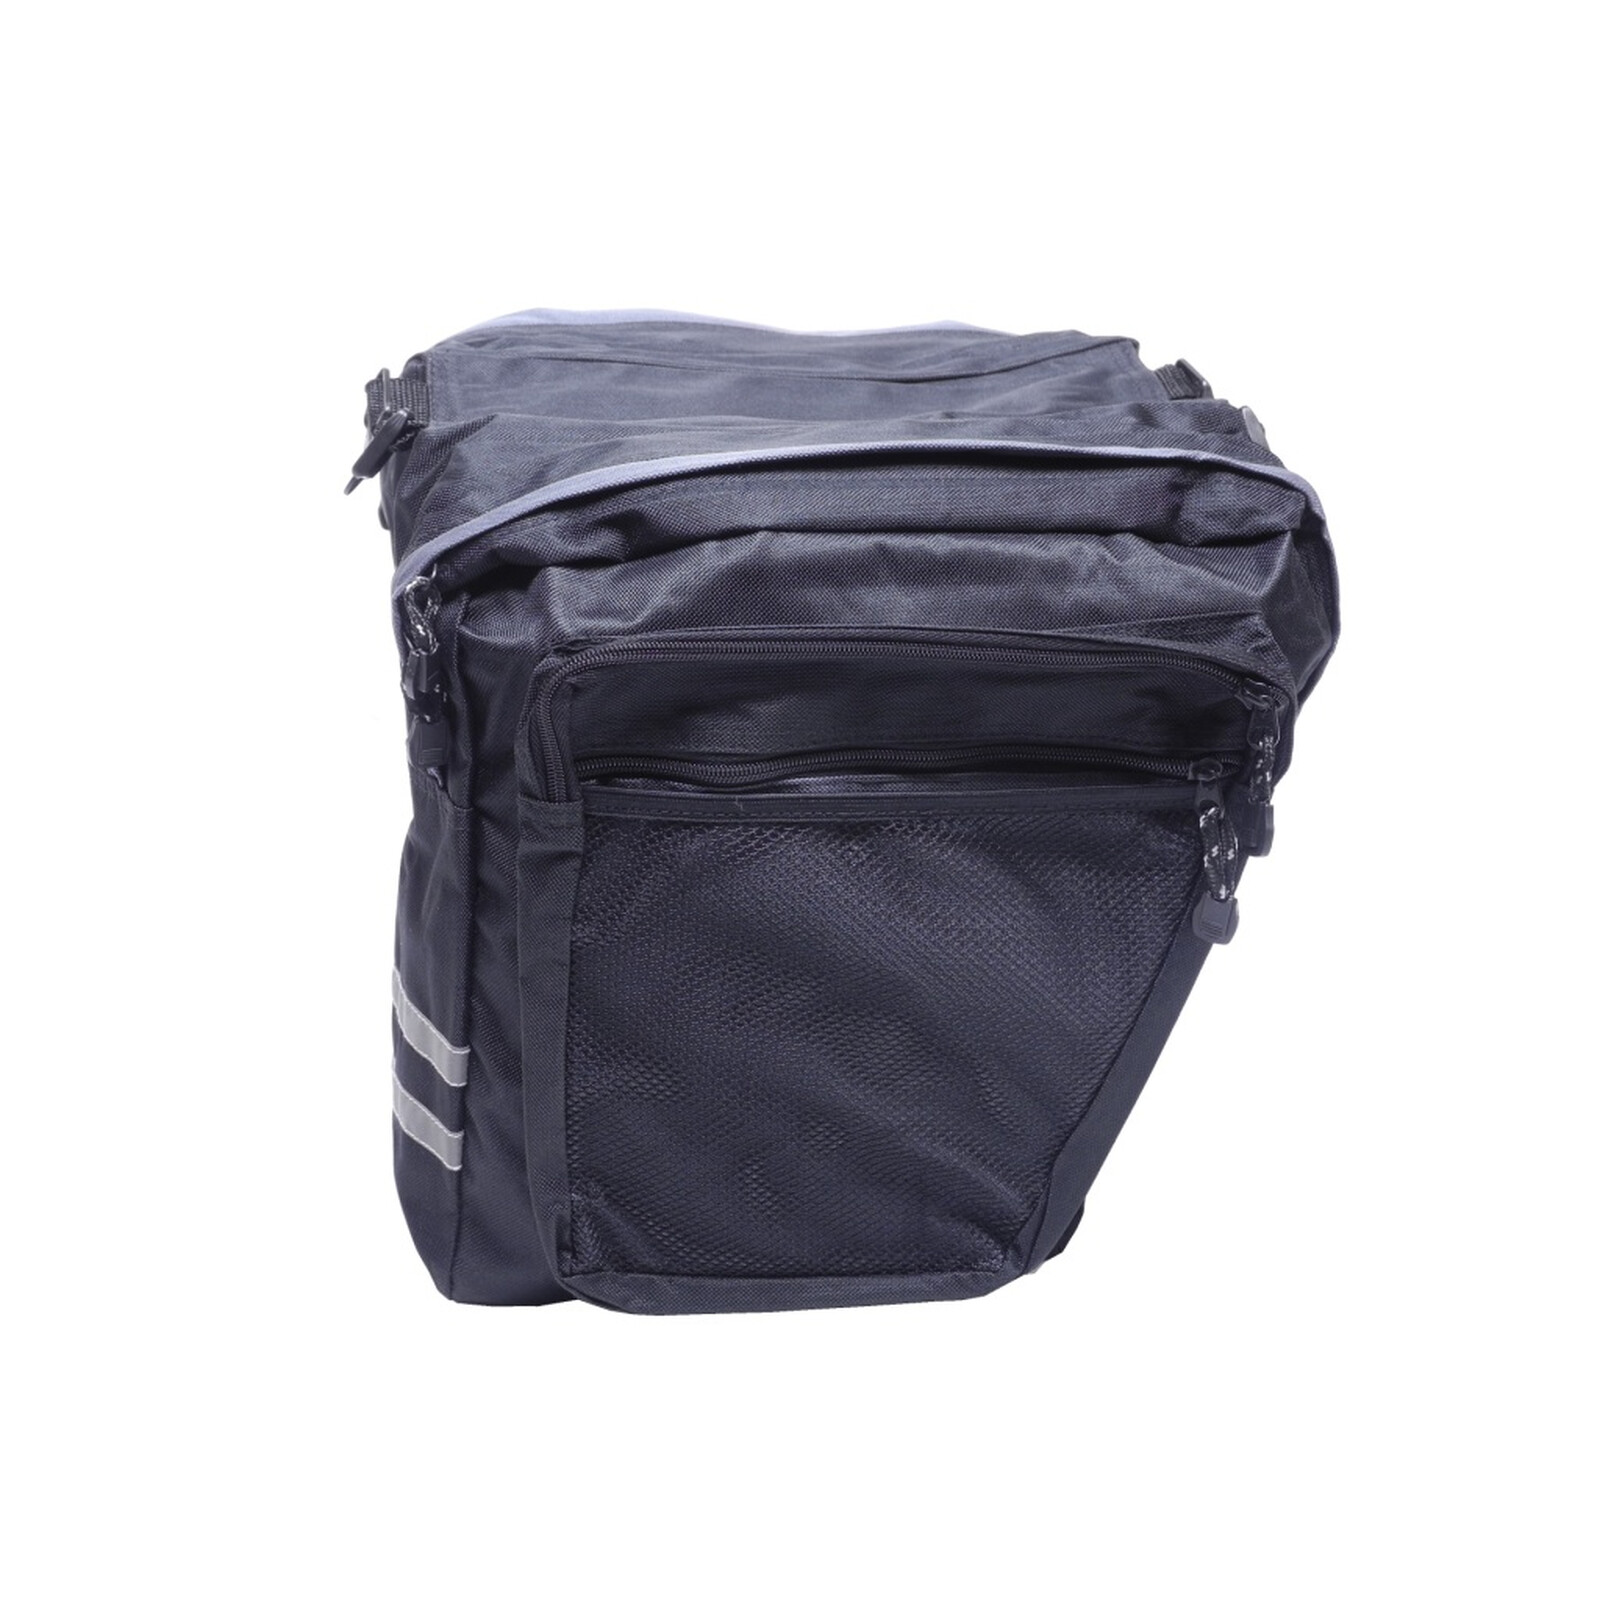 EUFAB Tasche Fahrradträger Premium TG Packtasche Aufbewahrungstasche Träger  schwarz Packsack Reise